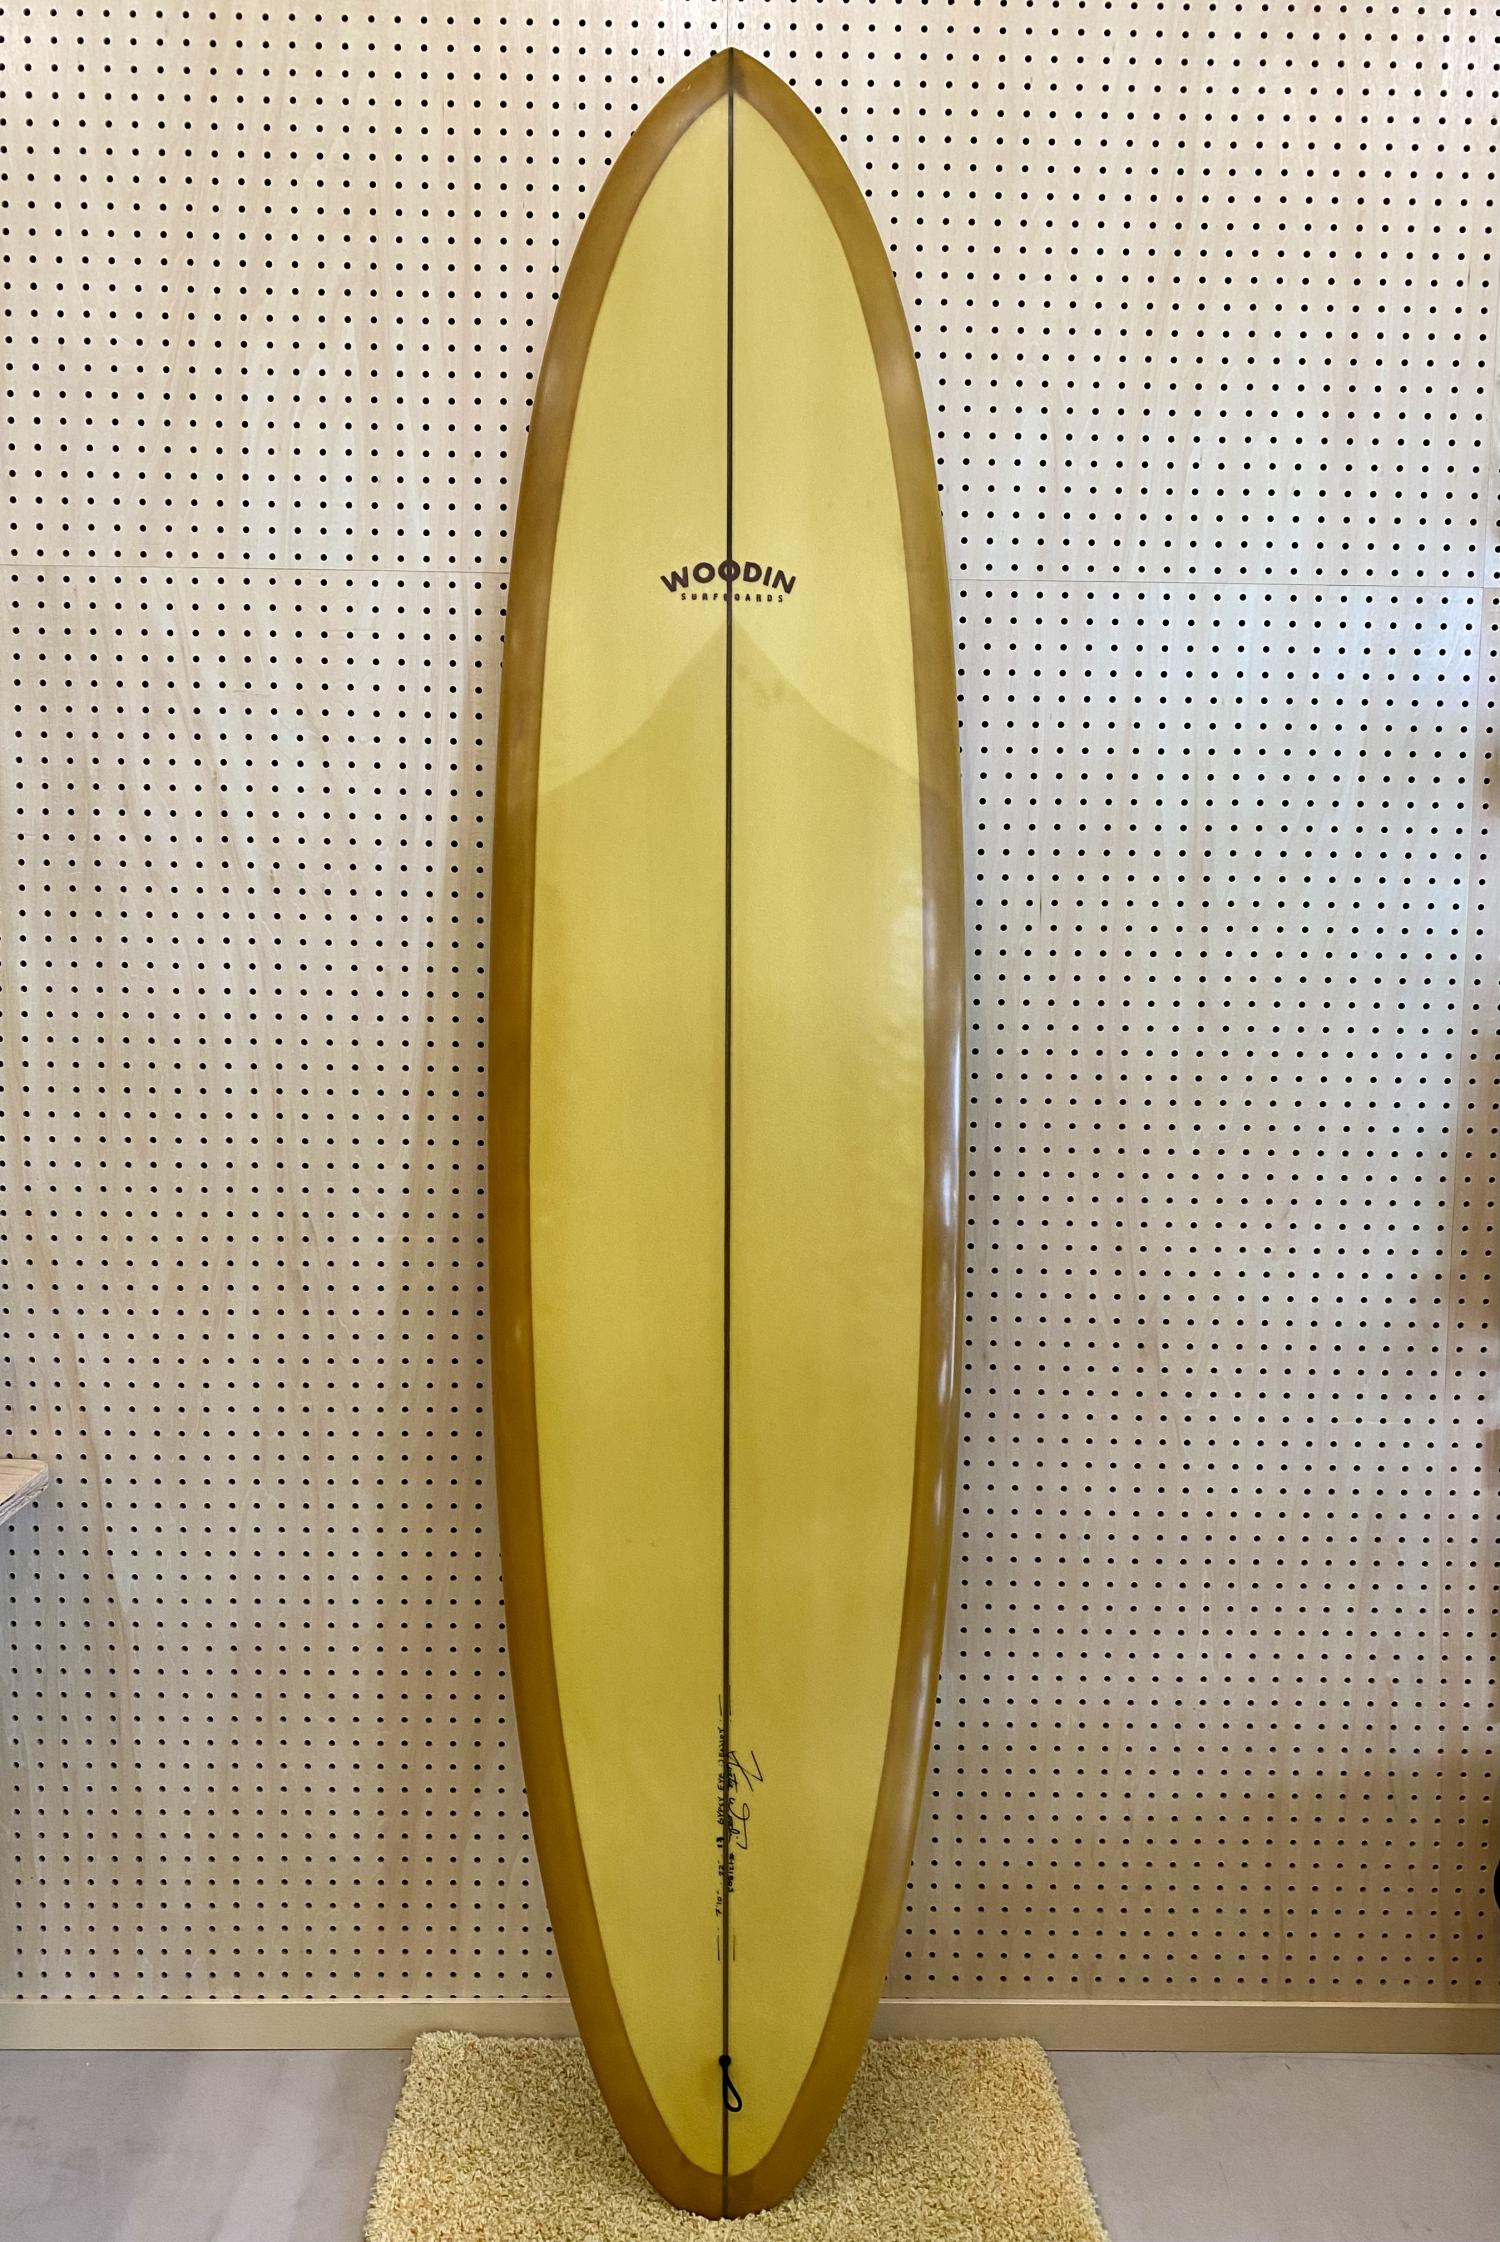 Gypsy Eye model 7.10 WOODIN SURFBOARDS